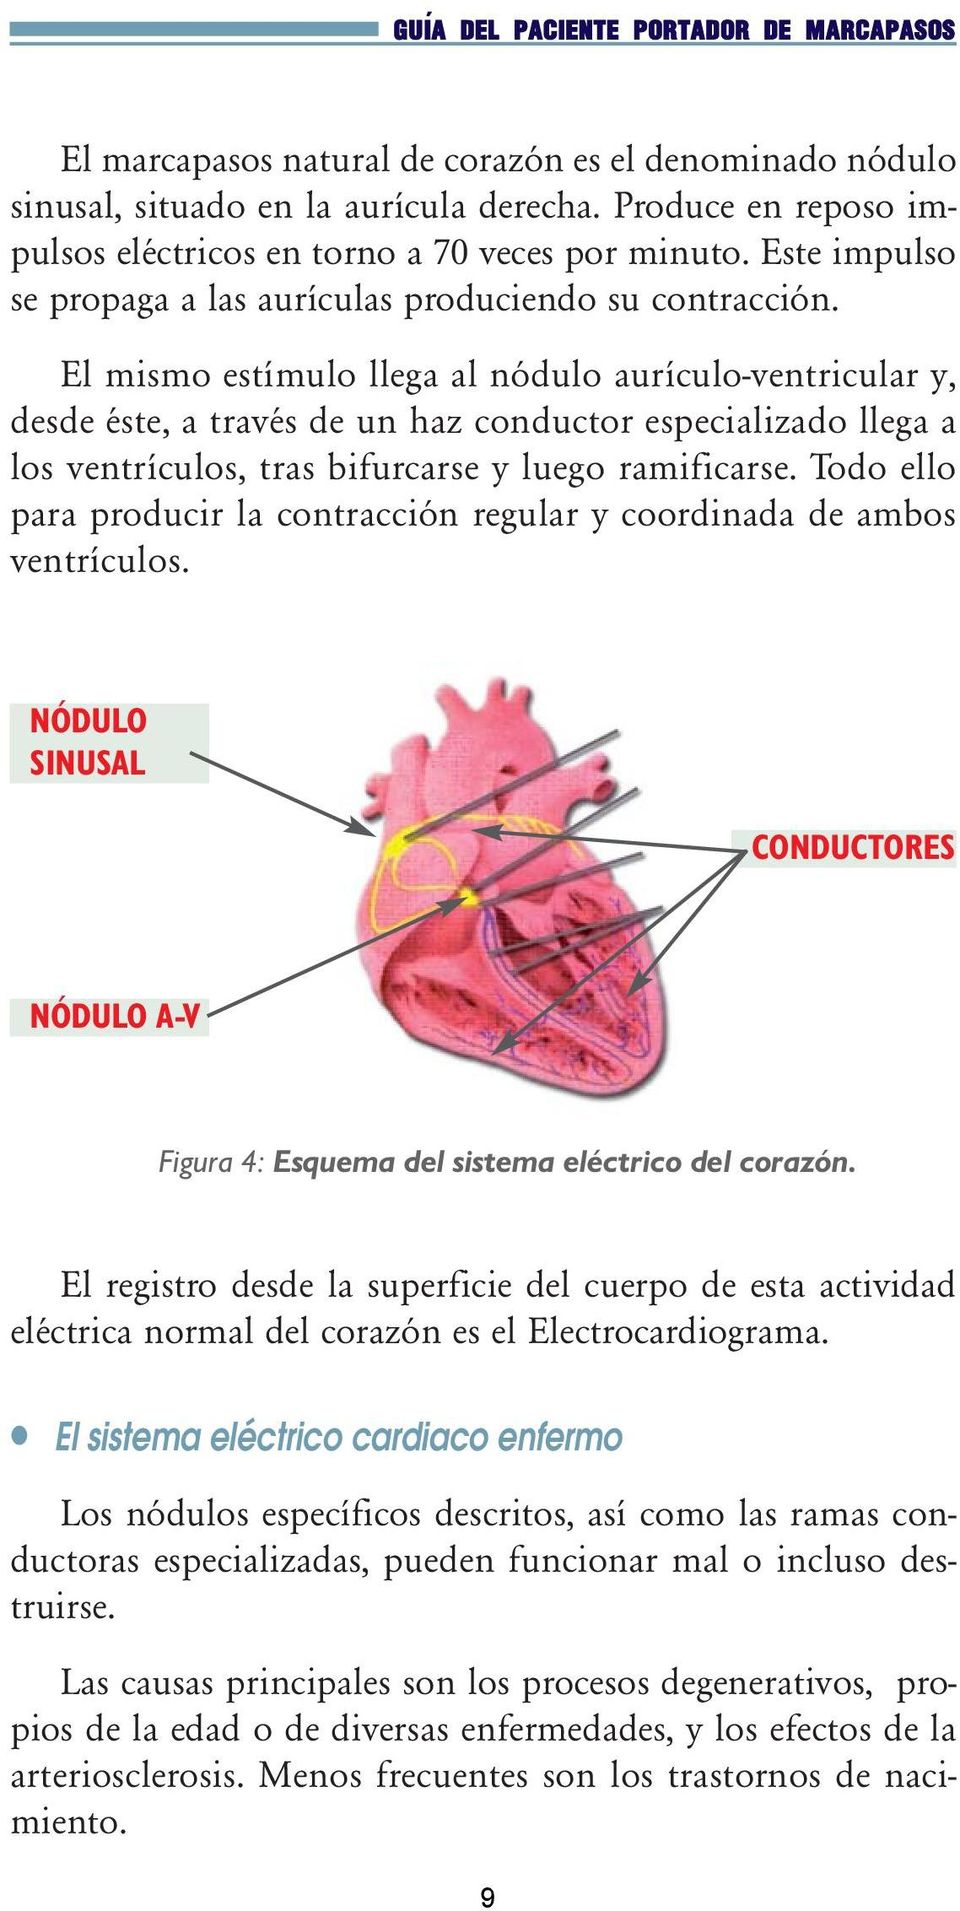 El mismo estímulo llega al nódulo aurículo-ventricular y, desde éste, a través de un haz conductor especializado llega a los ventrículos, tras bifurcarse y luego ramificarse.